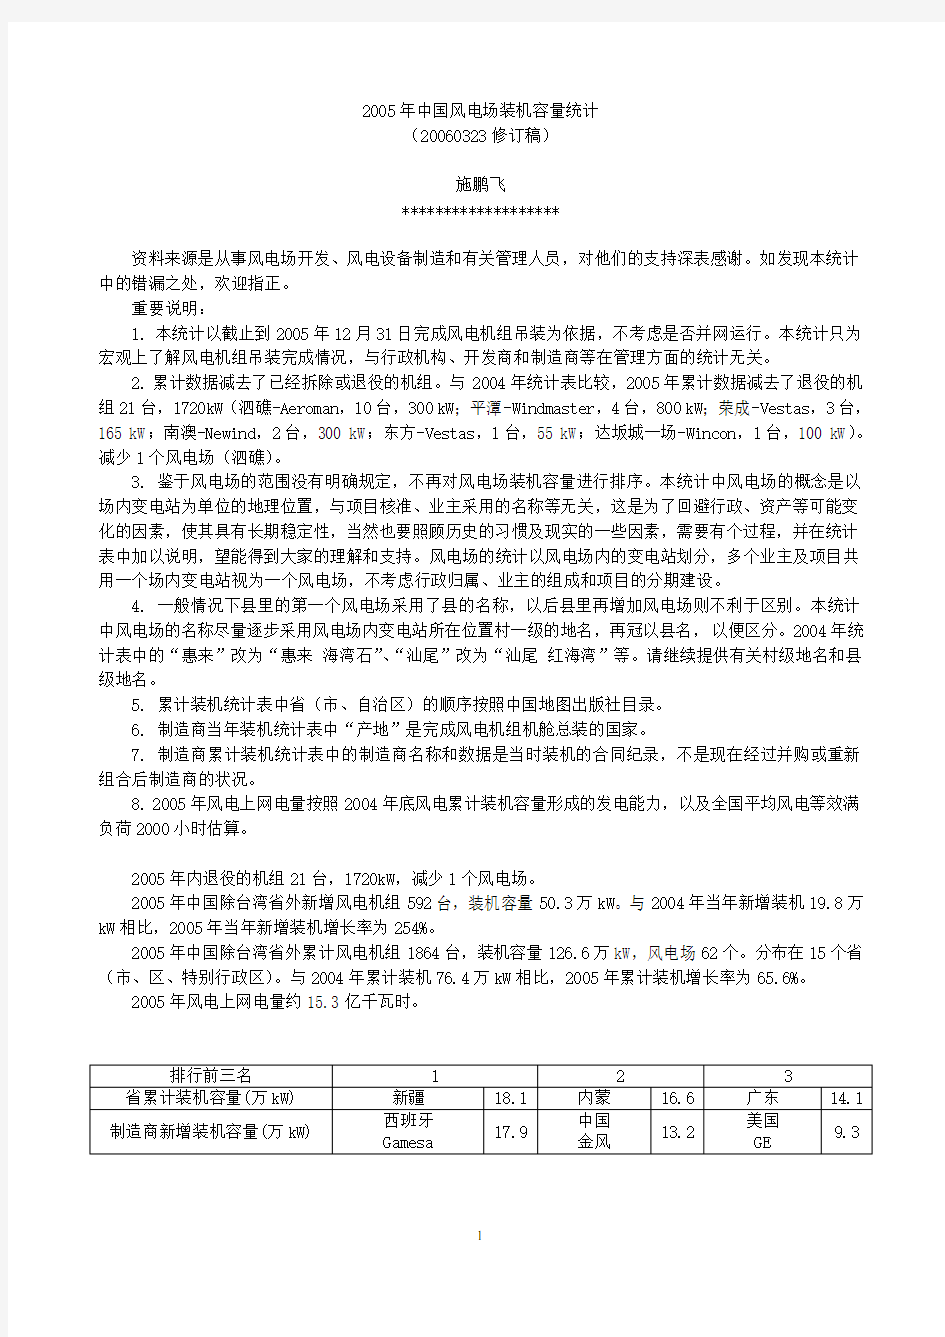 2005年中国风电装机容量统计